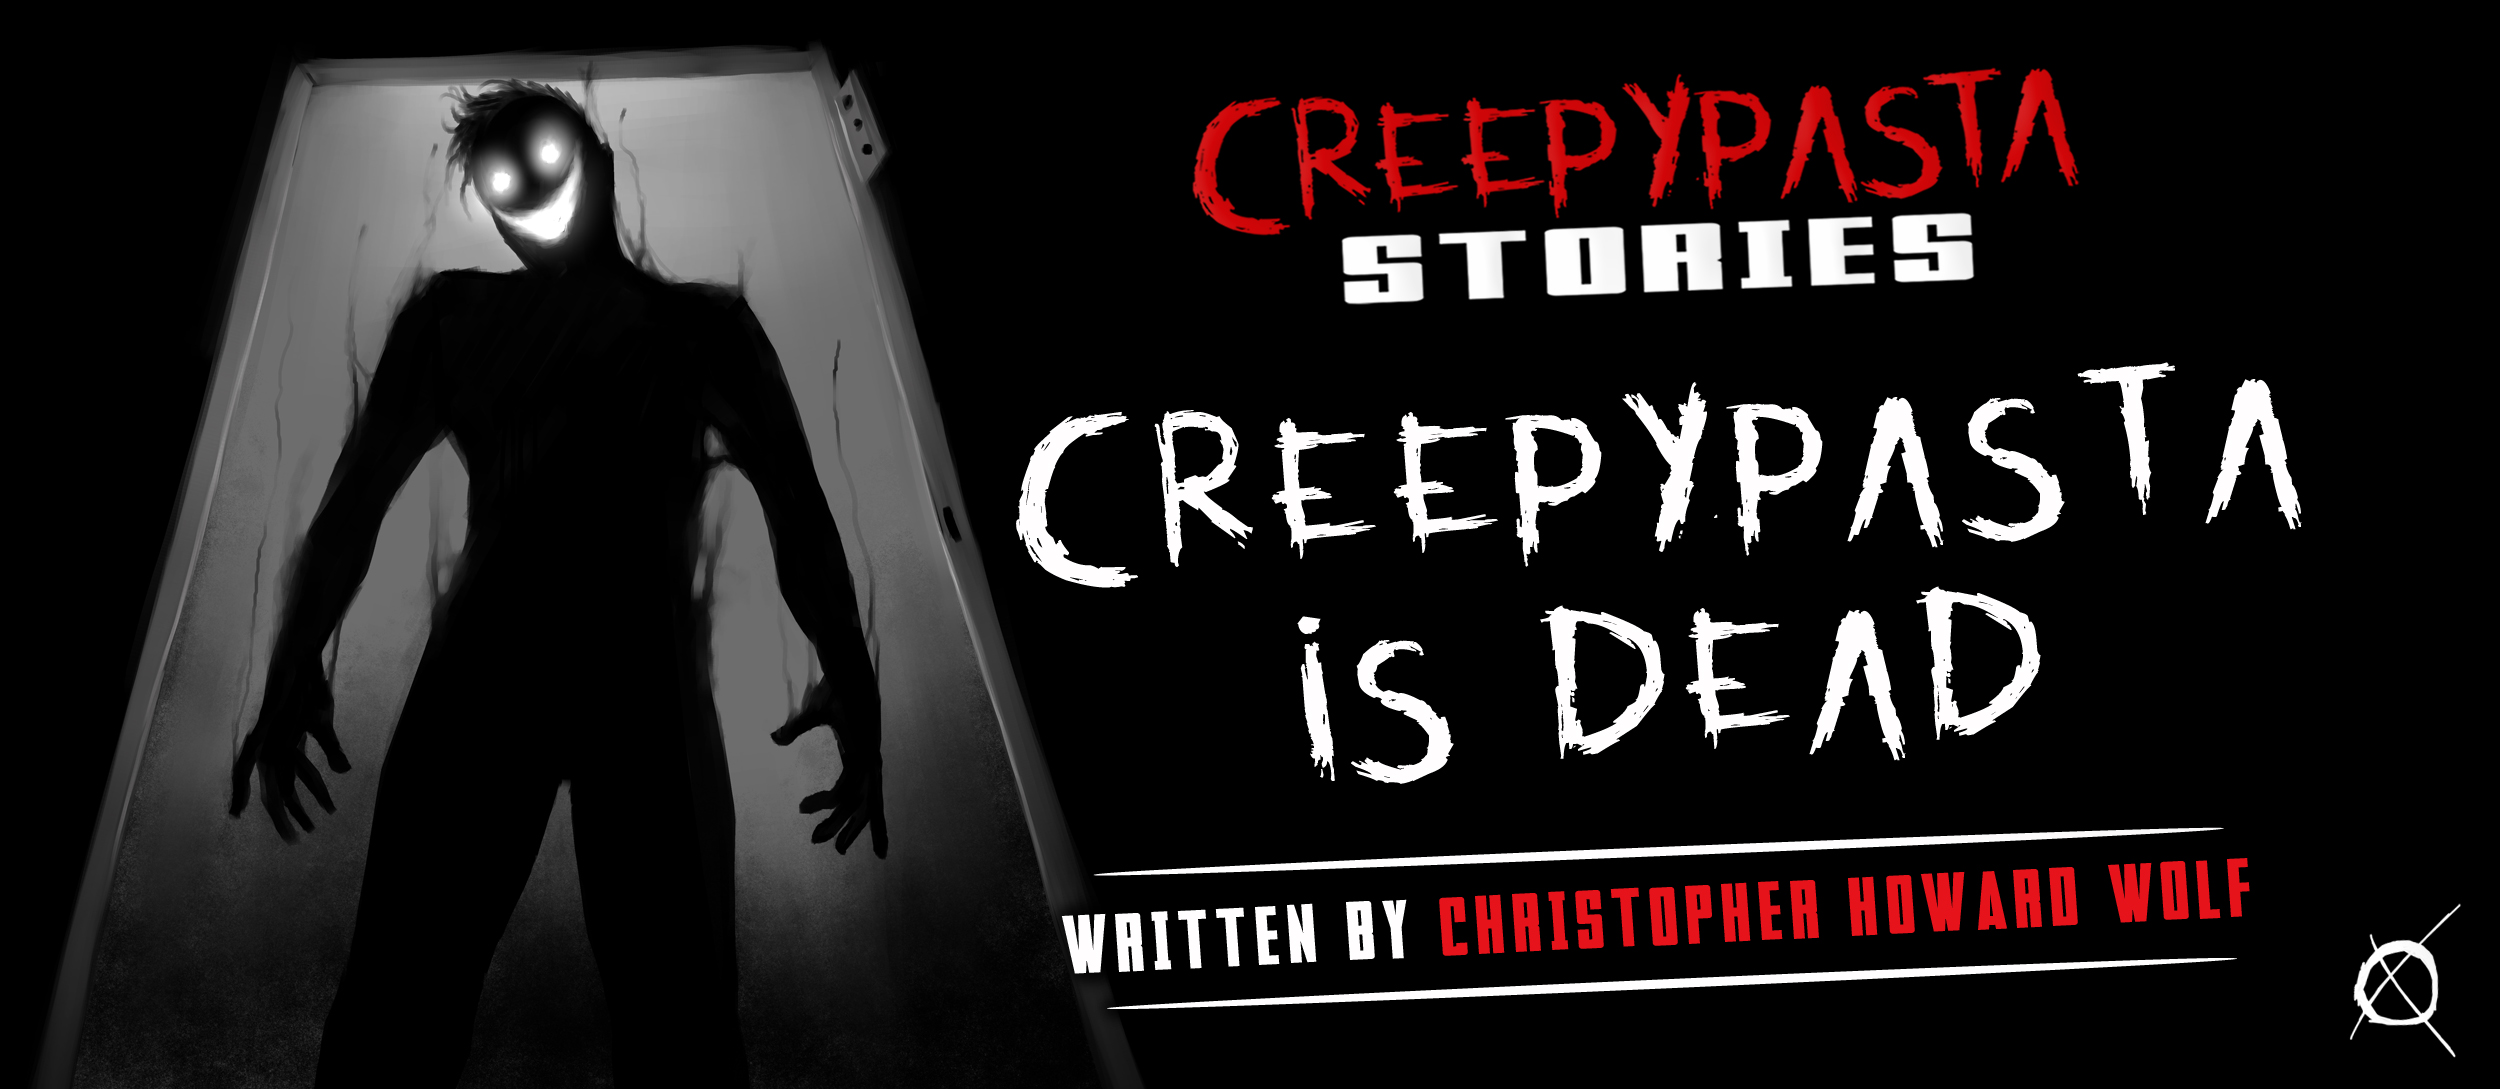 short scary stories creepypasta